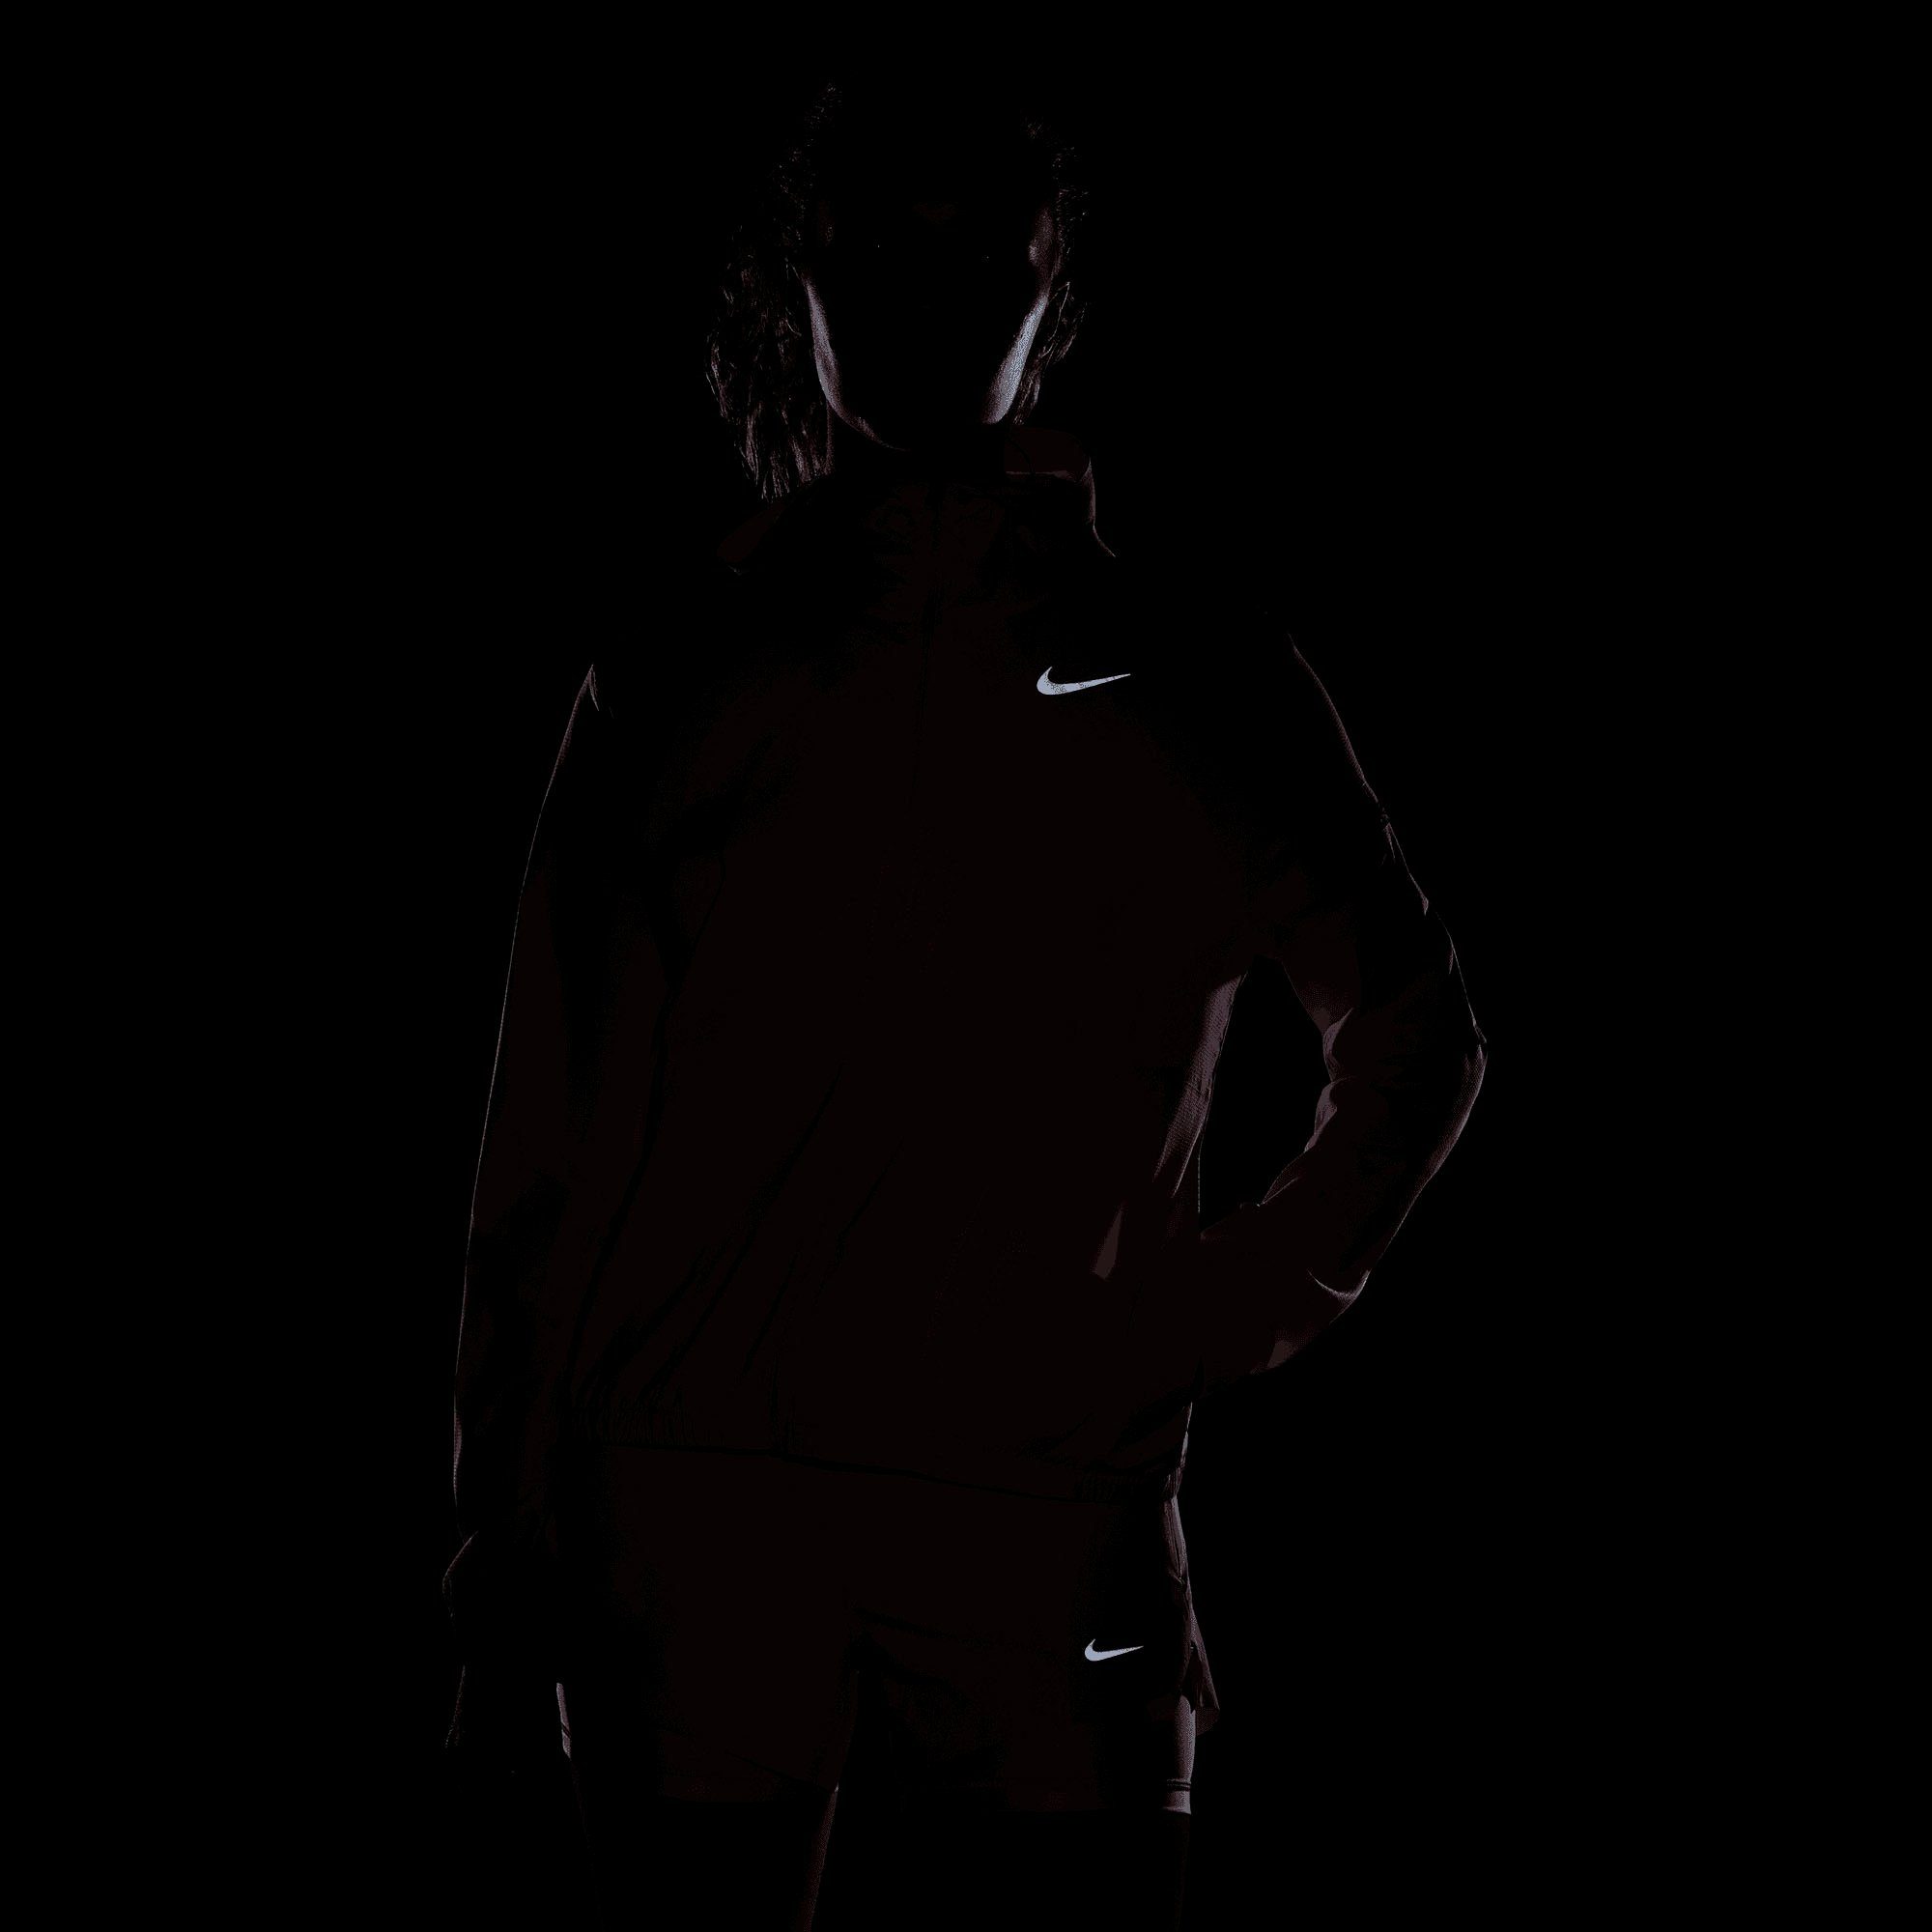 Women's Hooded Nike Impossibly Light Jacket Laufjacke Running